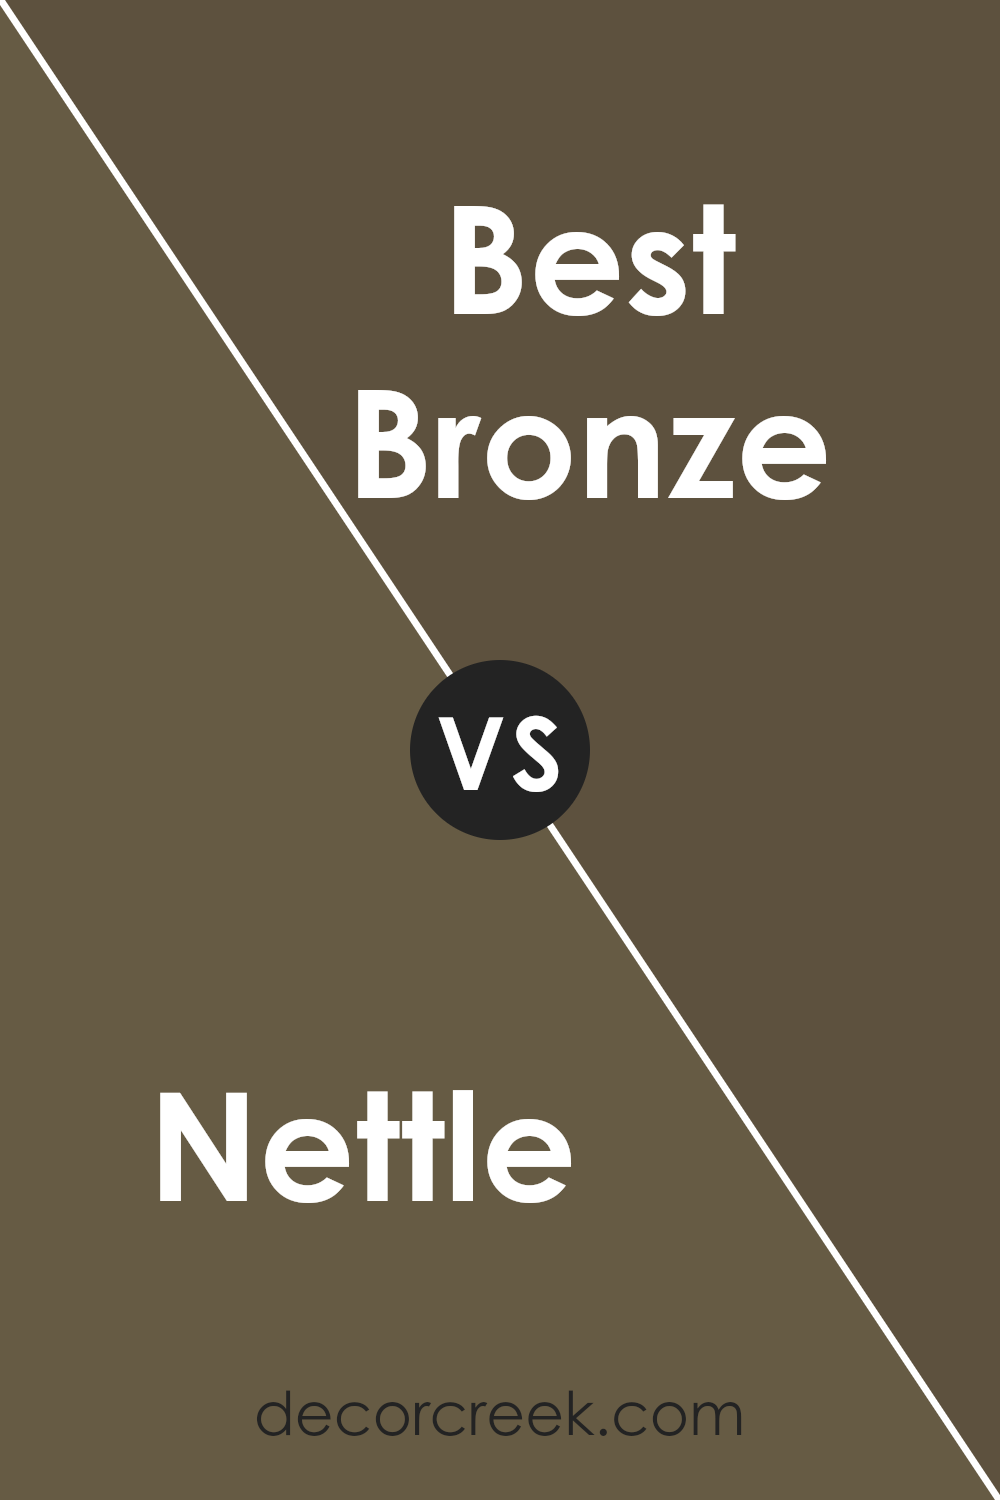 nettle_sw_9535_vs_best_bronze_sw_6160